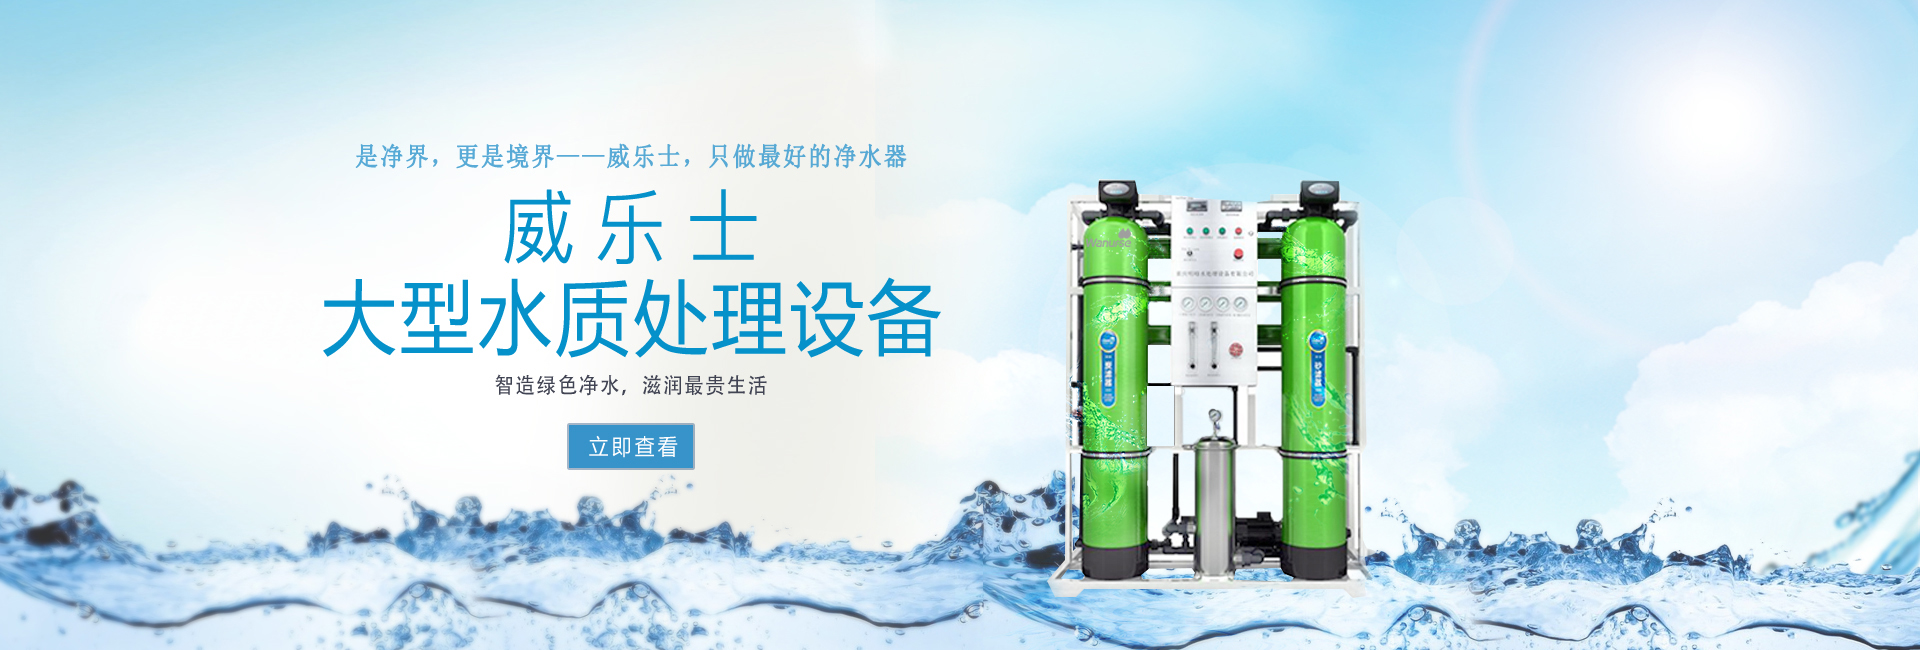 重庆明峰水处理设备有限公司